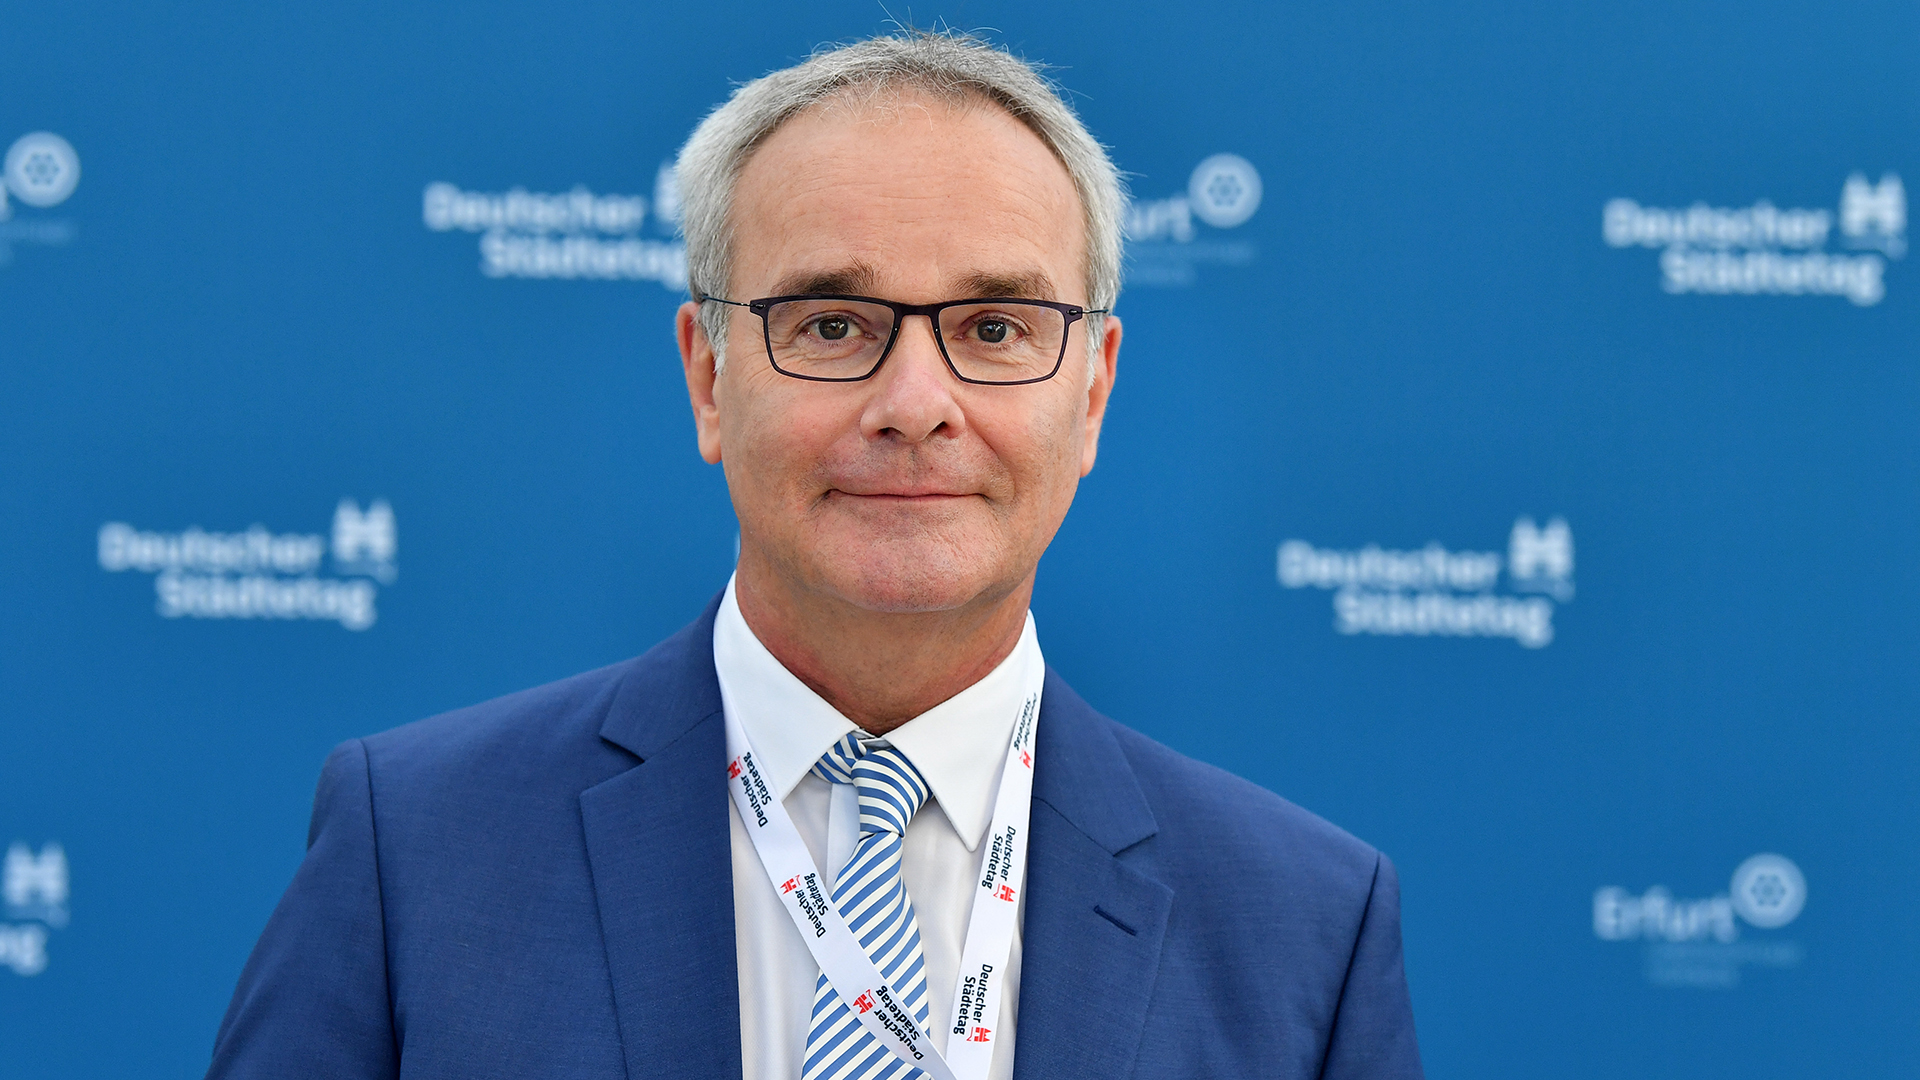 Helmut Dedy (SPD), Hauptgeschäftsführer des Deutschen Städtetages. | picture alliance/dpa/dpa-Zentral